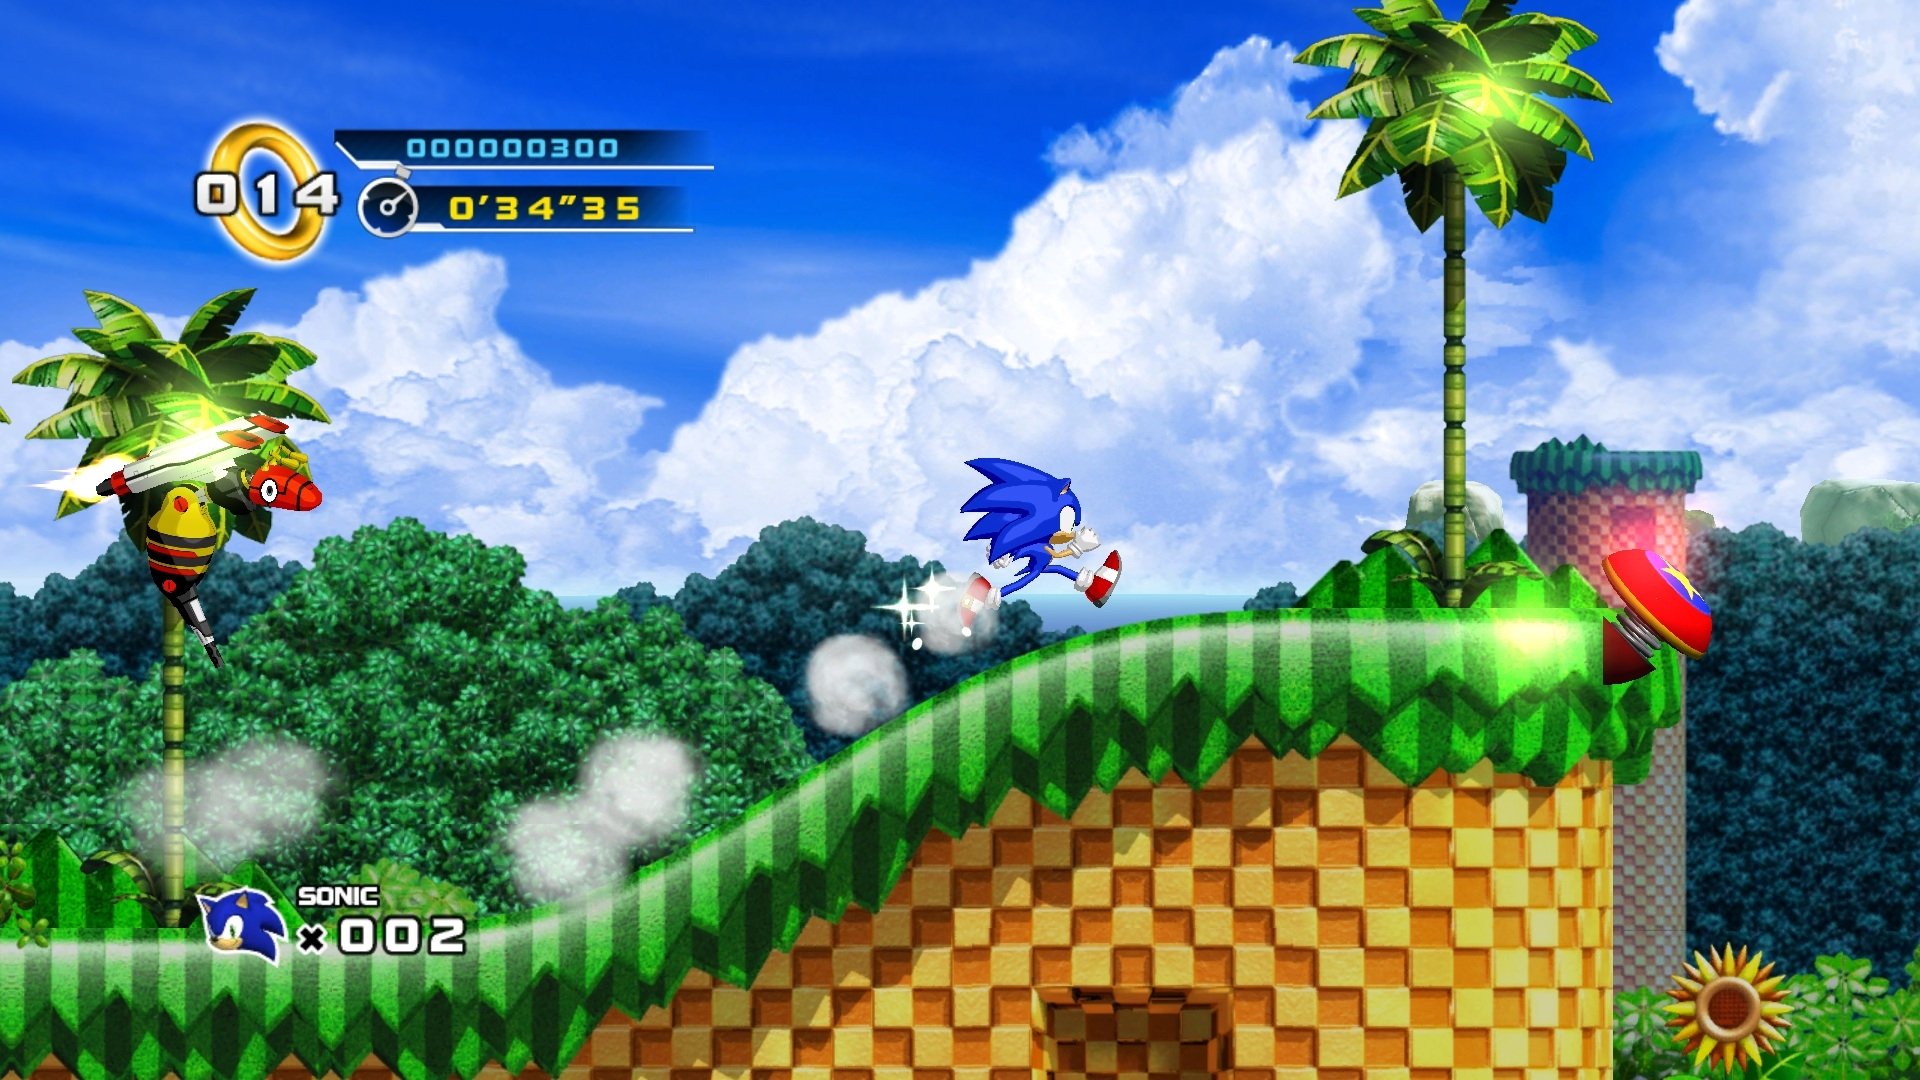 Hãy cùng ngắm những hình nền Sonic The Hedgehog 4: Tập 1 HD vô cùng đẹp mắt. Với những hình ảnh mới lạ và sắc nét, bạn sẽ cảm thấy như đang được đắm mình trong chính thế giới Sonic. Hãy tải về và trang trí màn hình điện thoại của bạn ngay hôm nay.